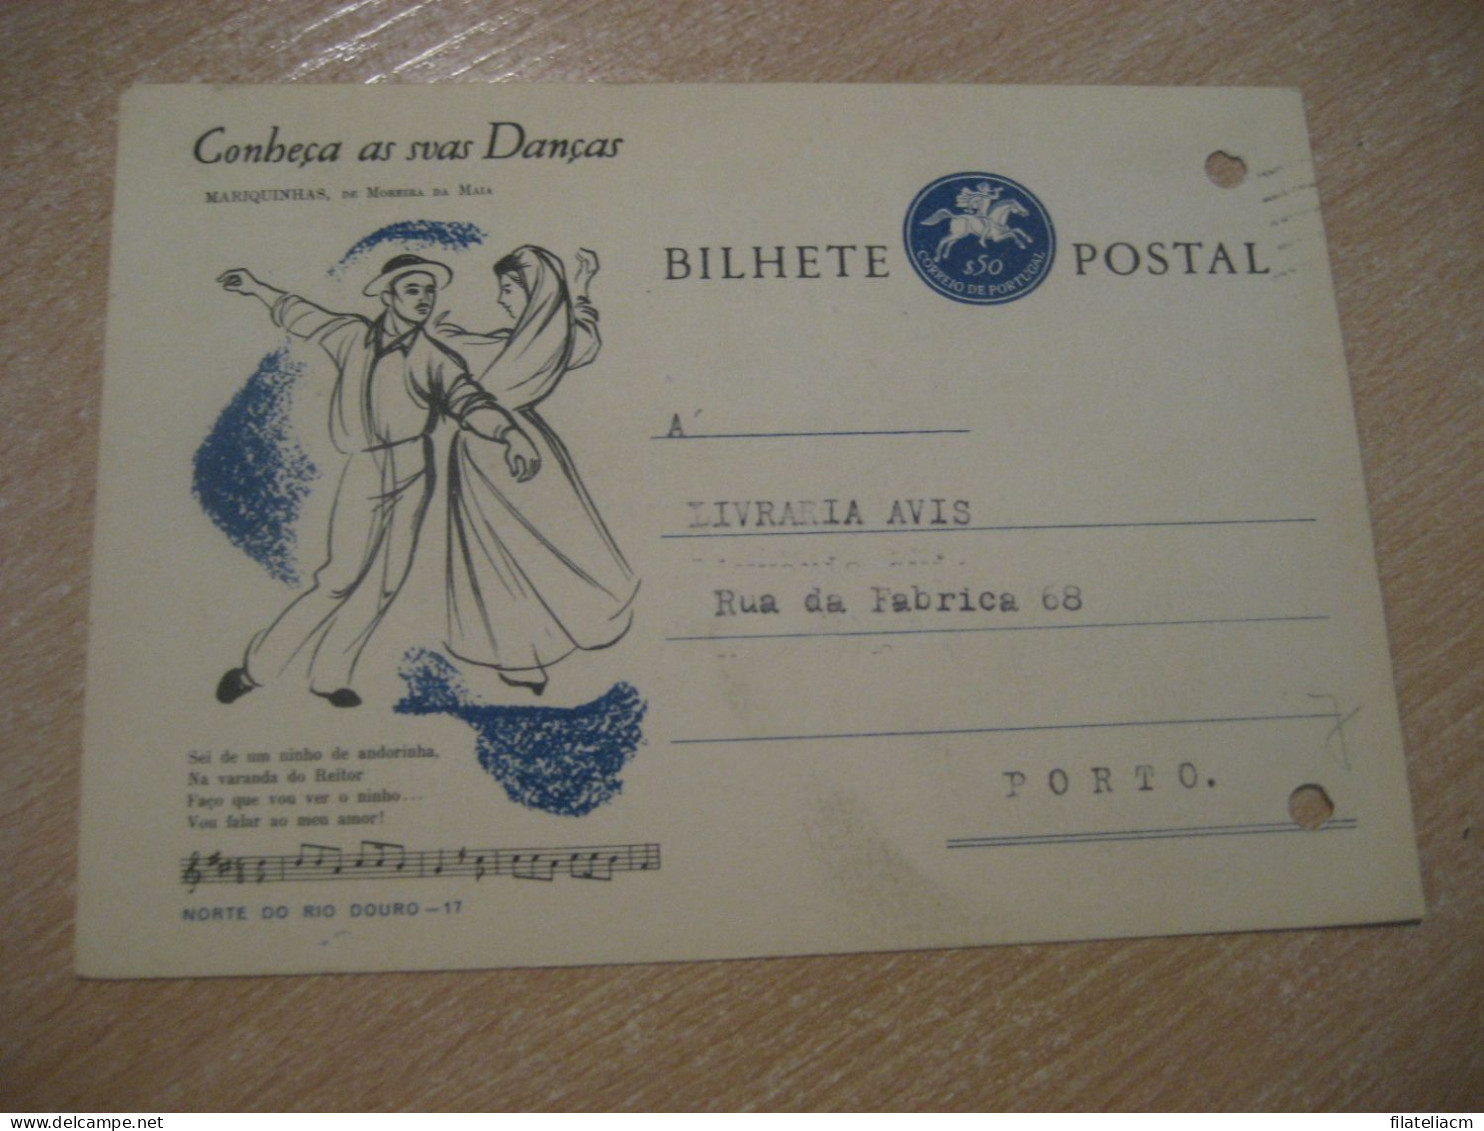 CASTELO BRANCO 1964 To Porto Conheça As Suas Danças Mariquinhas De Moreira Da Maia Bilhete Postal Stationery PORTUGAL - Storia Postale